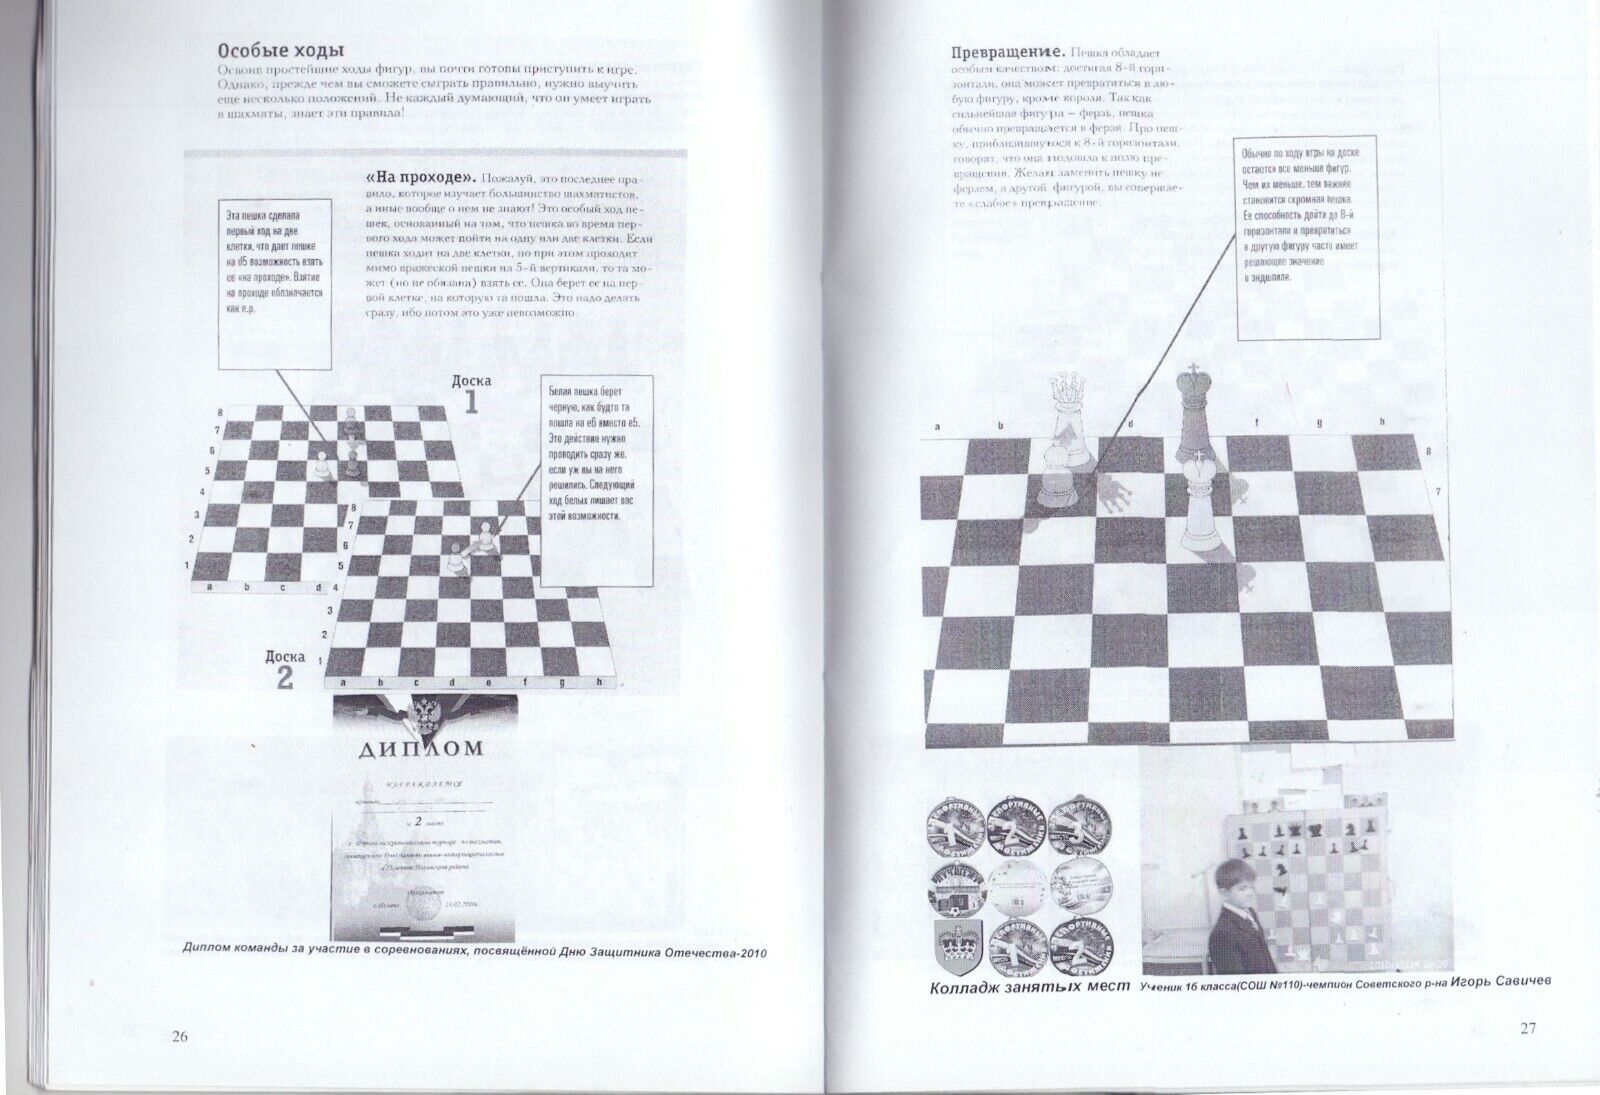 11517.Russian chess book: Guzairov M. Chess tutorial for beginners. Ufa, 2011